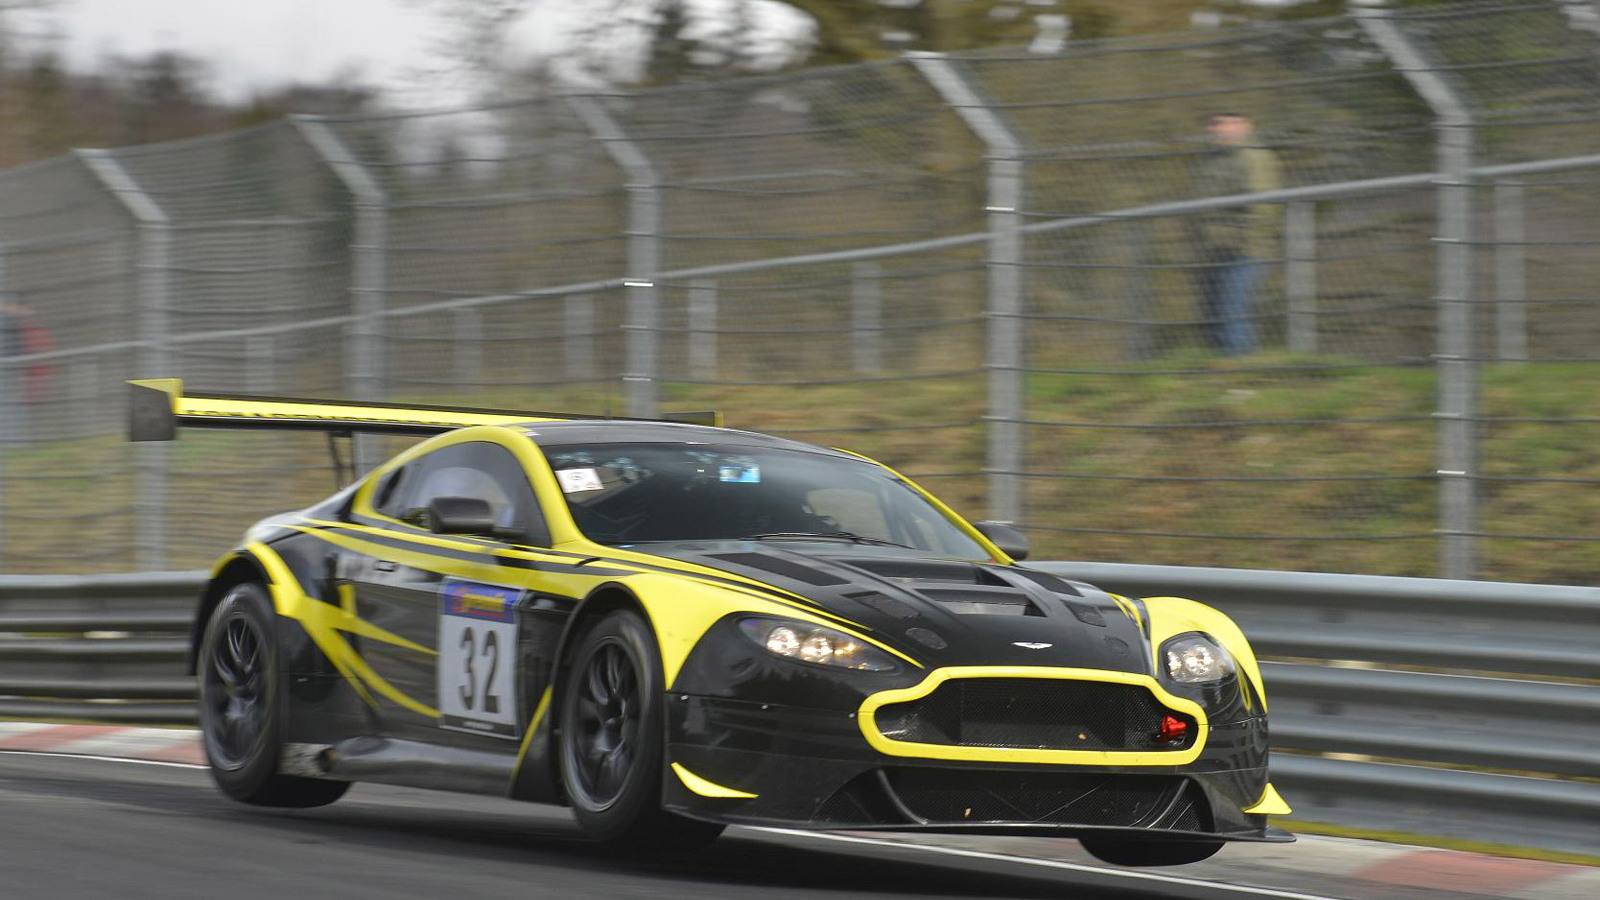 2014 Aston Martin V12 Vantage GT3 race car